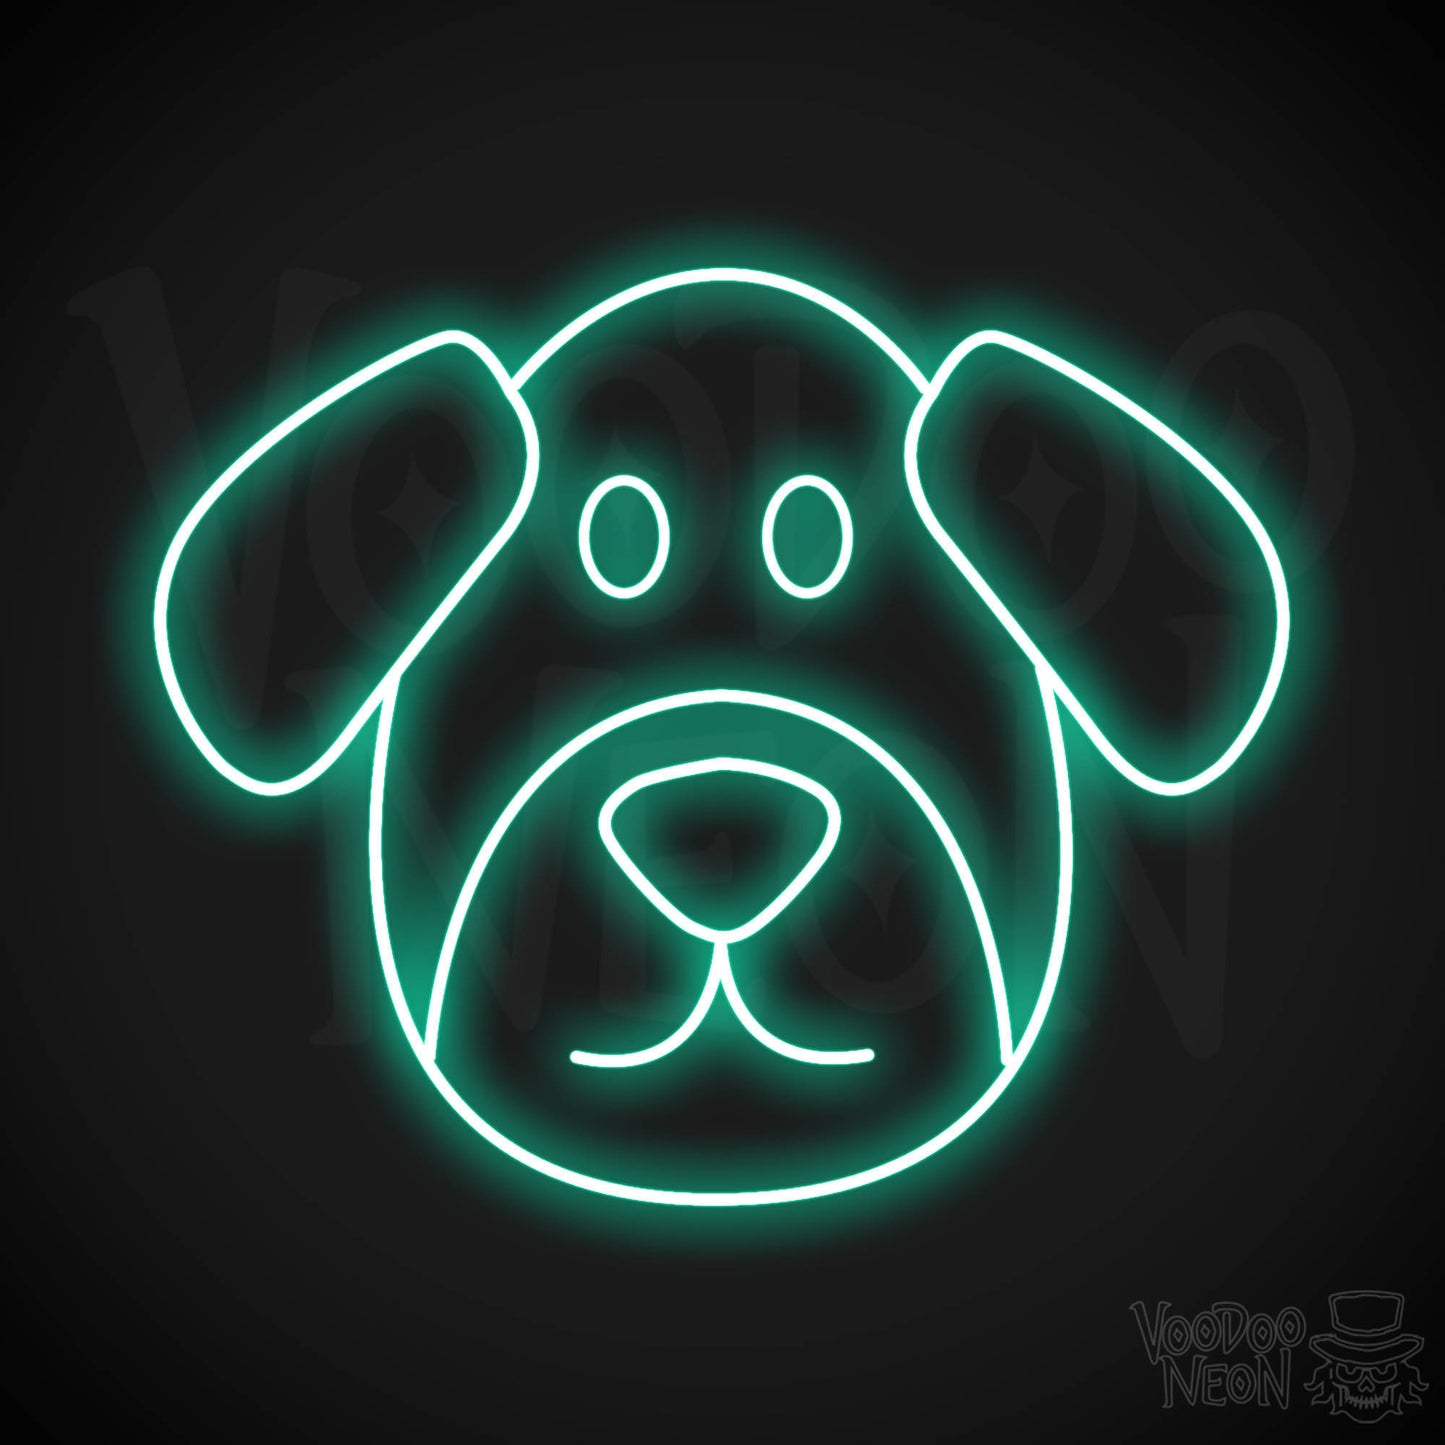 Dog Face LED Neon - Light Green